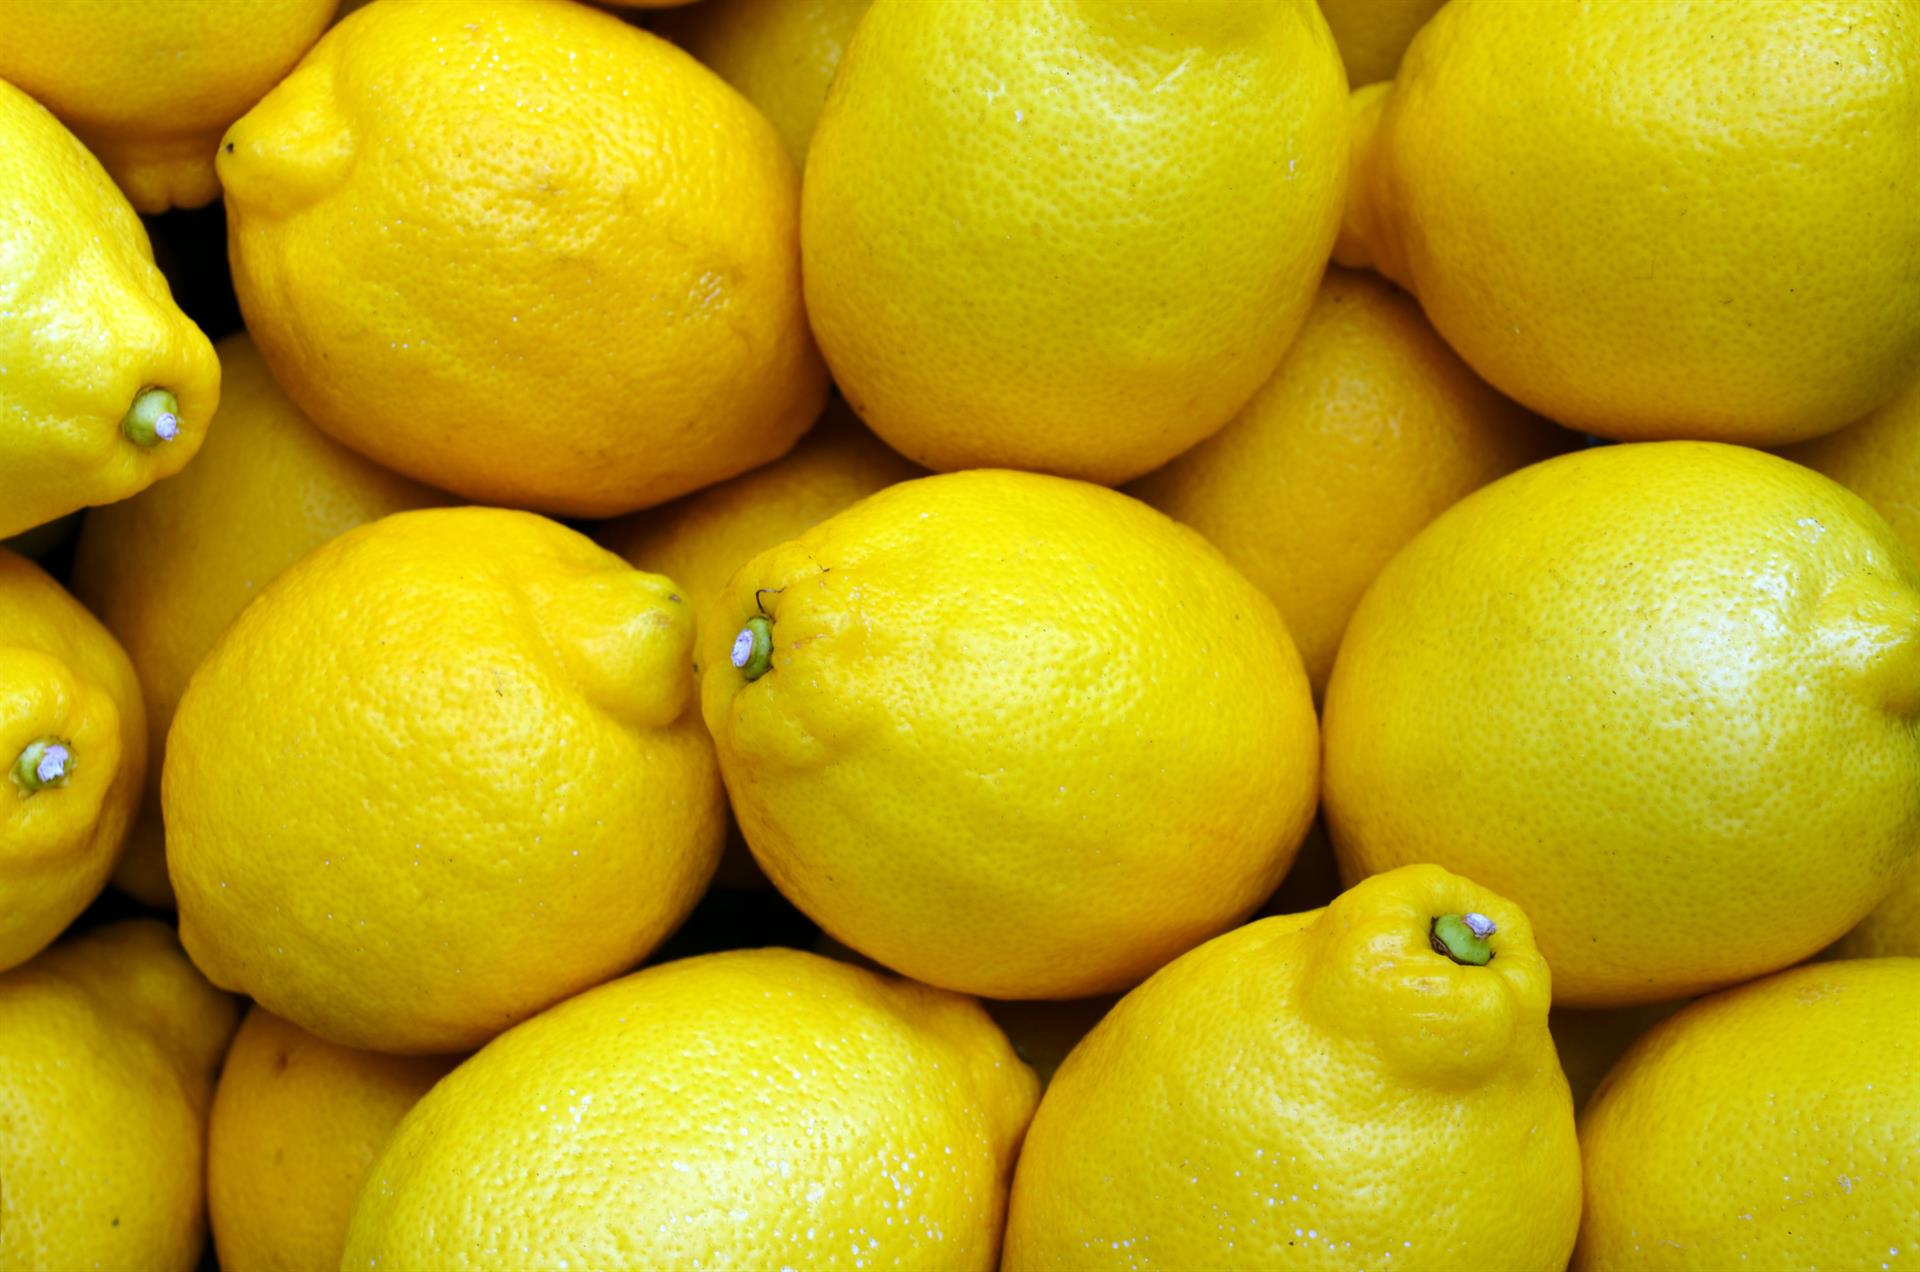 Variedad 'Verna' de limones - Mercadona